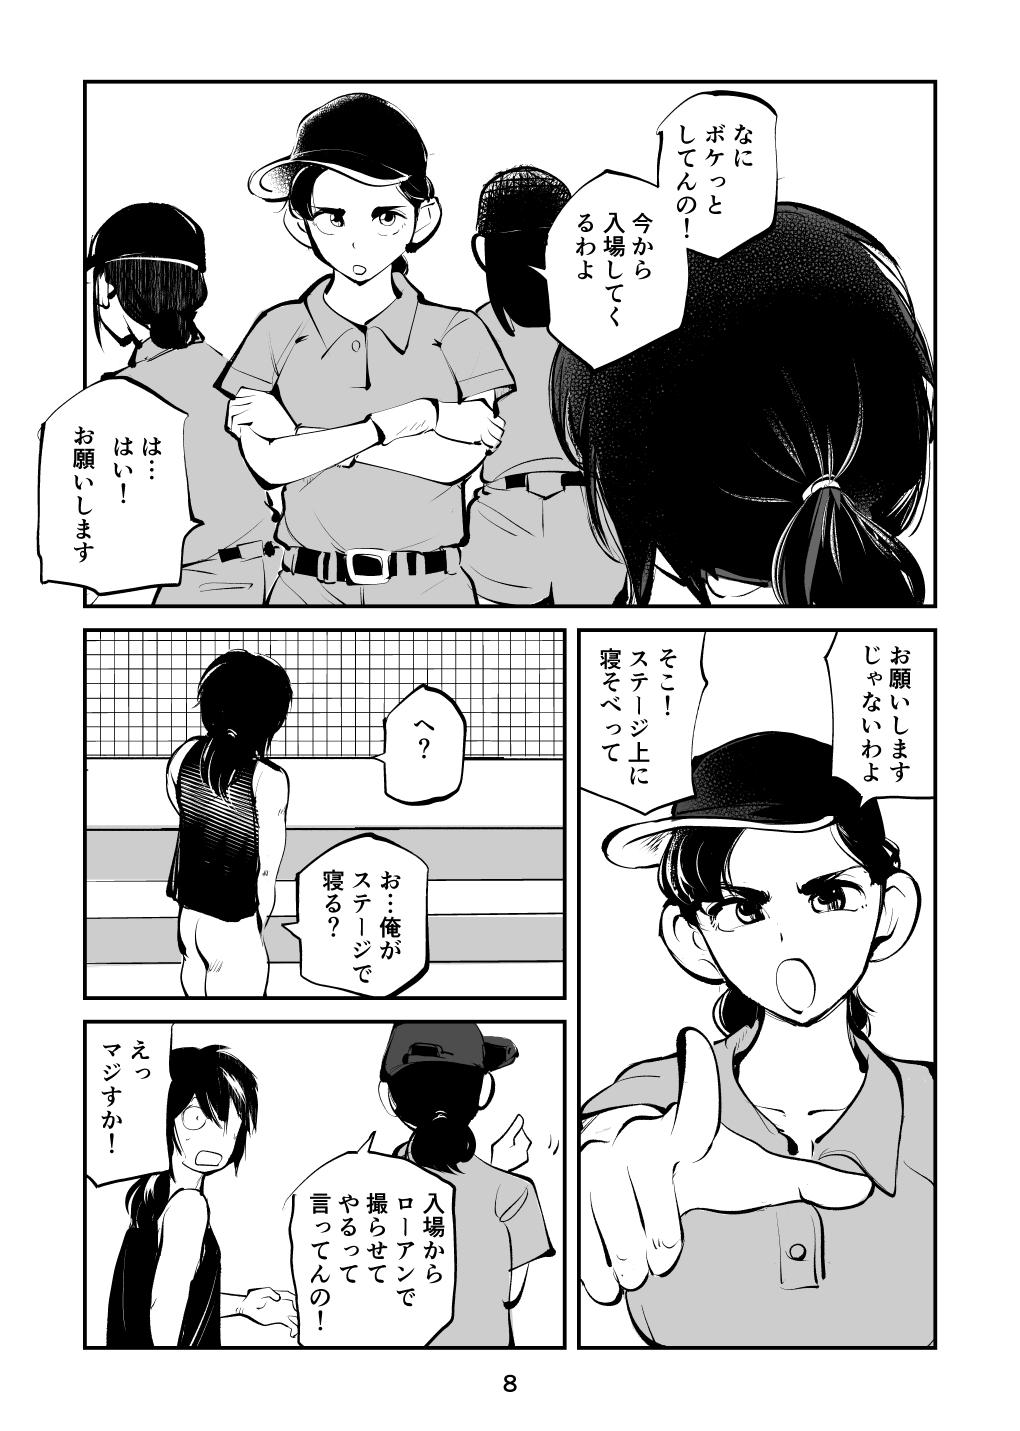 Banheiro Kinkeri Cheer Girl VS Tosatsuma Shakai Hito Cheer Girl-hen - Original Amador - Page 8